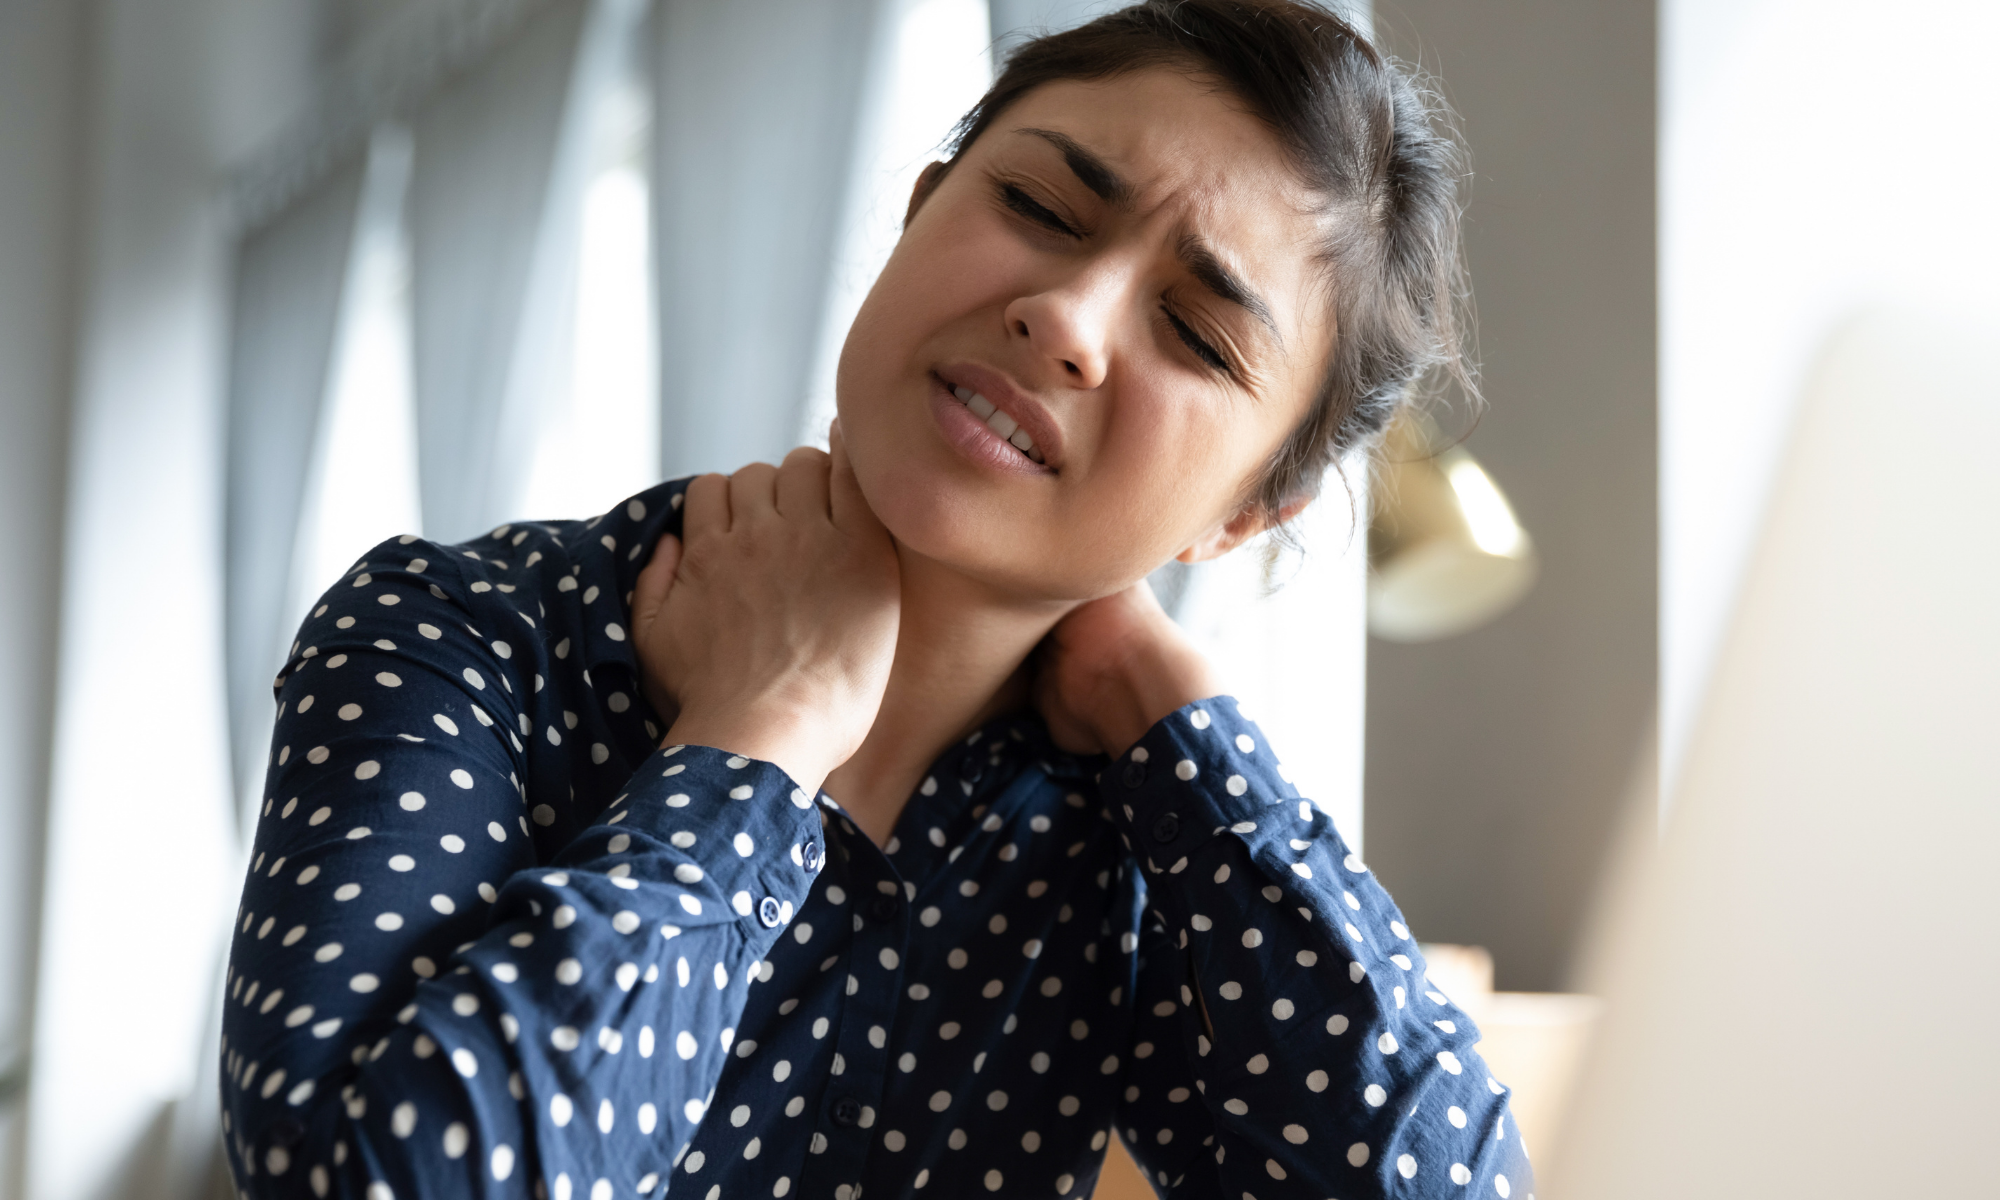 Woman rubs neck in discomfort